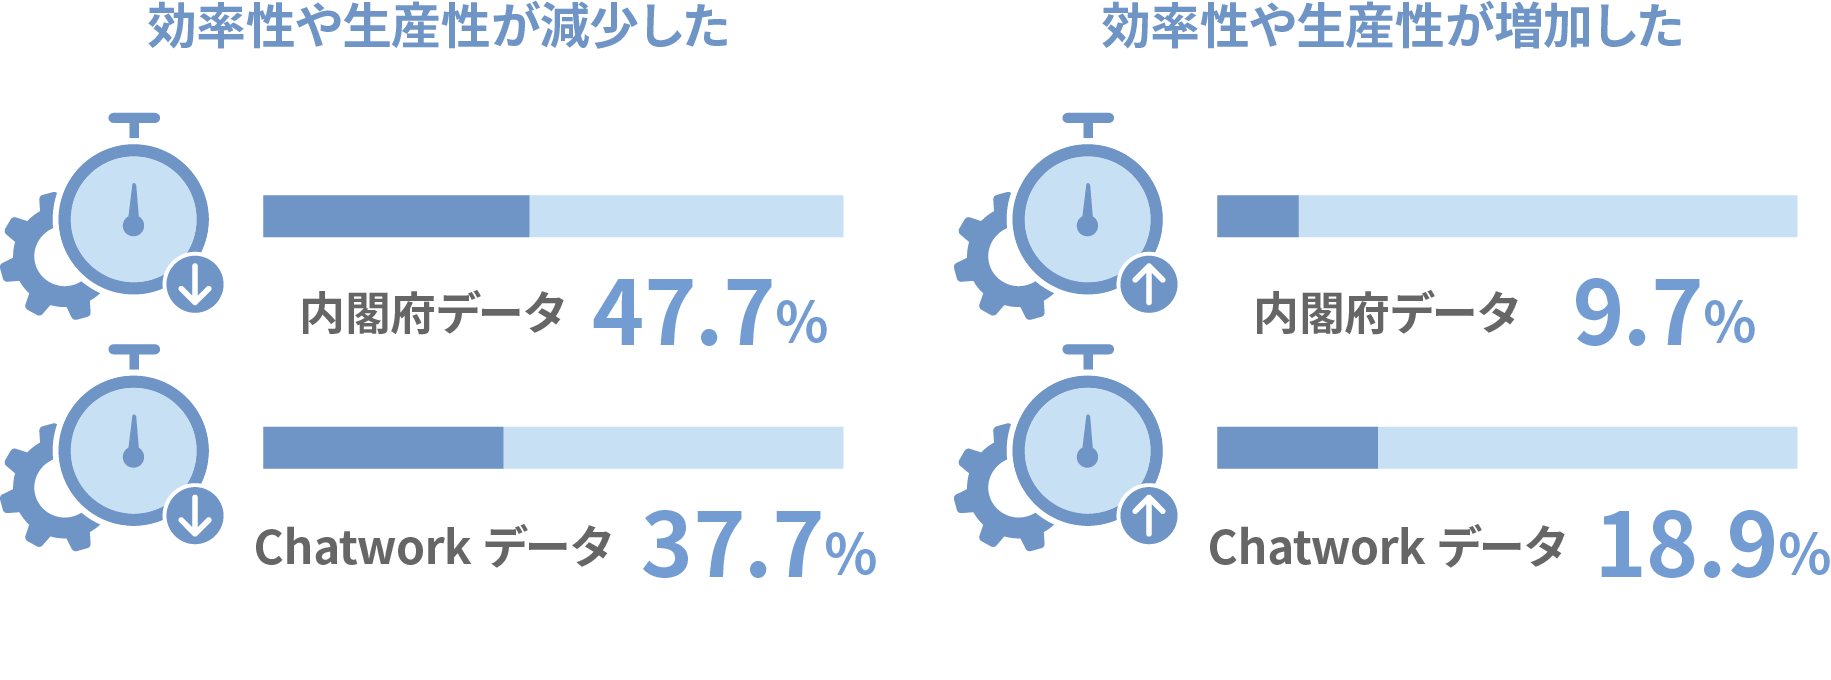 効率性や生産性が減少した：内閣府データ47.7%、Chatworkデータ37.7%　効率性や生産性が減少した：内閣府データ9.7%、Chatworkデータ18.9%